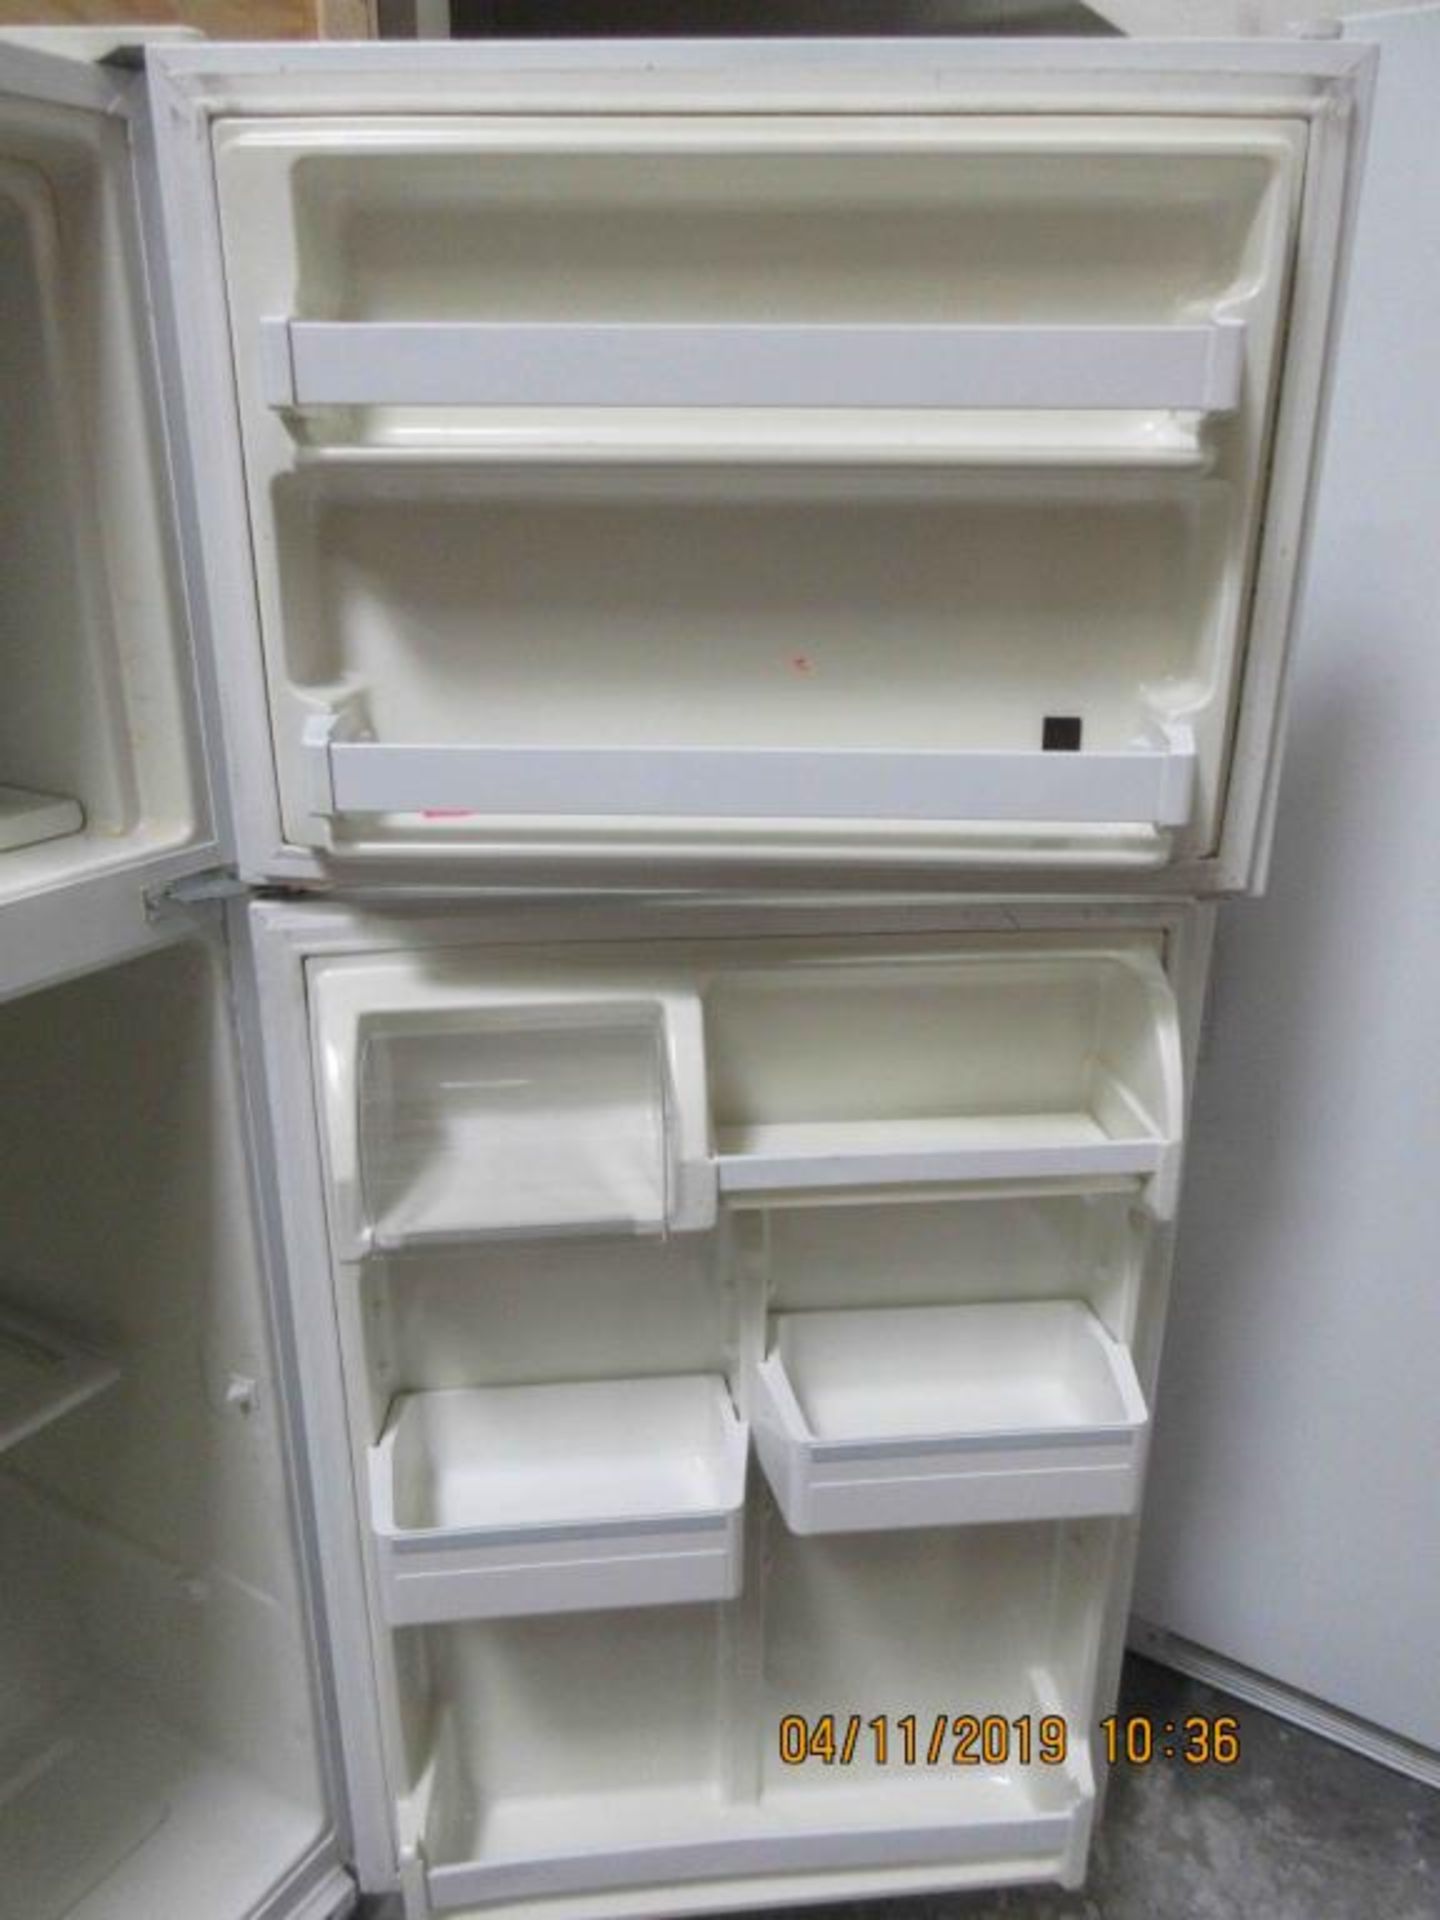 Refrigerator - Image 3 of 4